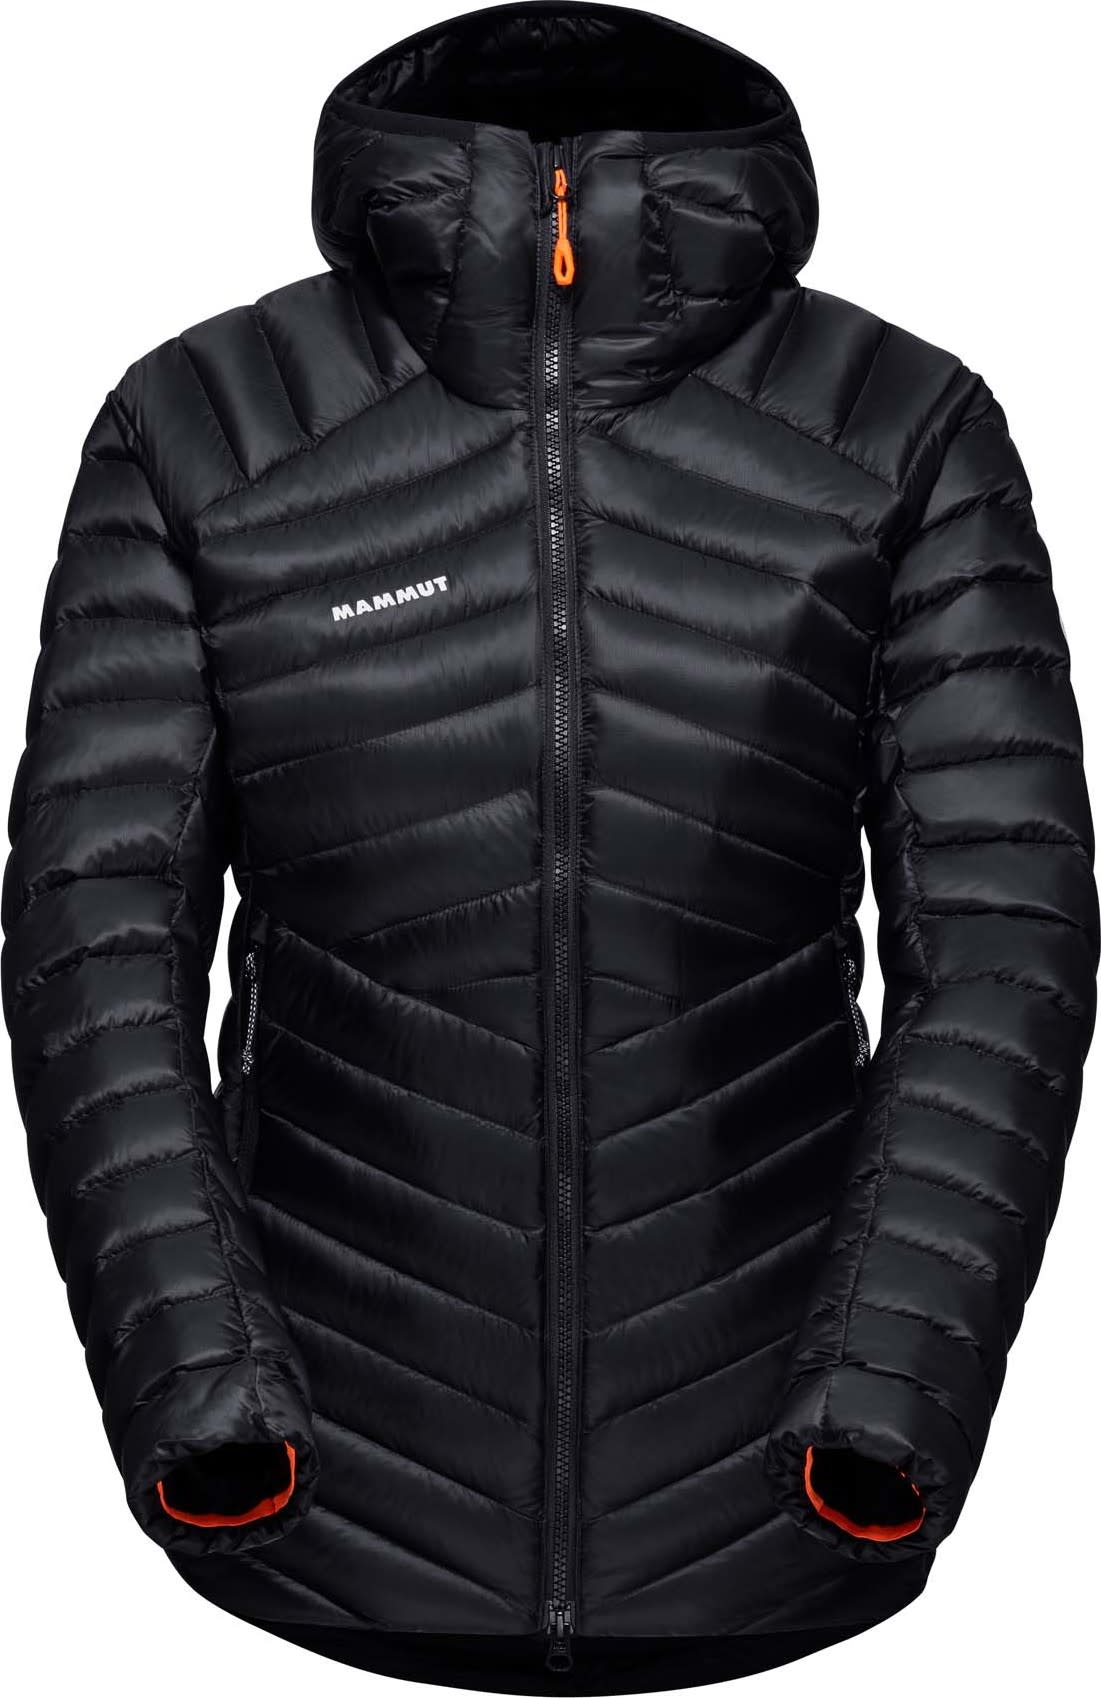 Women's Broad Peak IN Hooded Jacket black